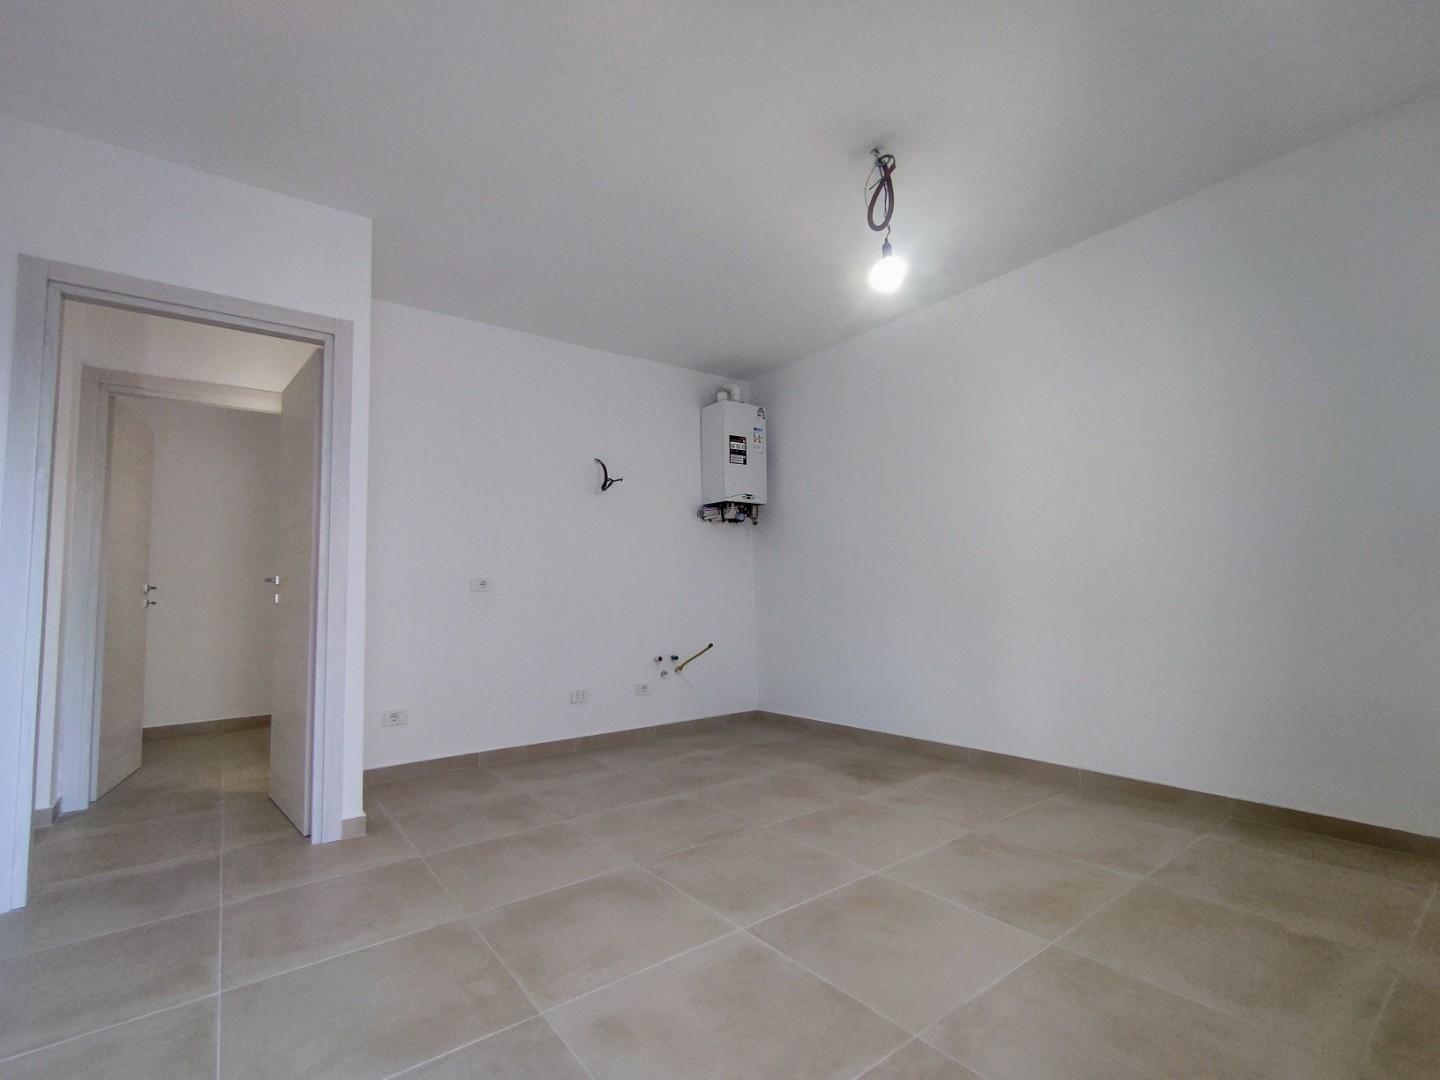 Appartamento in vendita a Santa Croce sull'Arno, 3 locali, prezzo € 120.000 | PortaleAgenzieImmobiliari.it